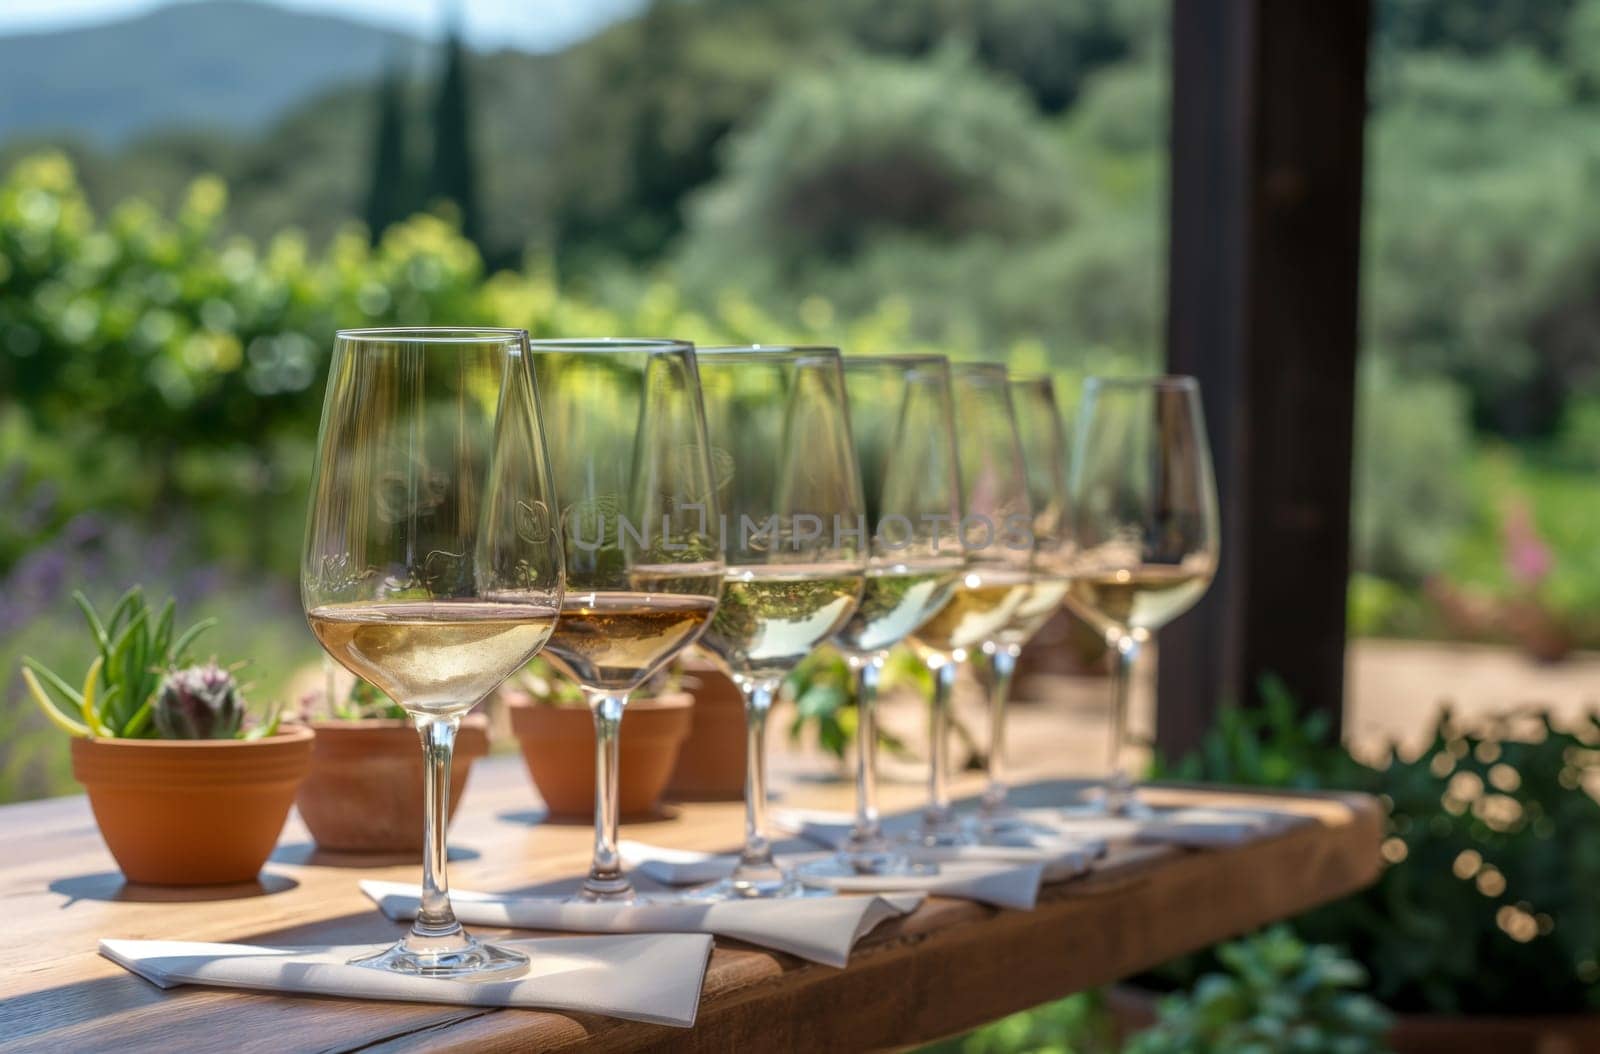 Wine tasting in vineyard setting by gcm